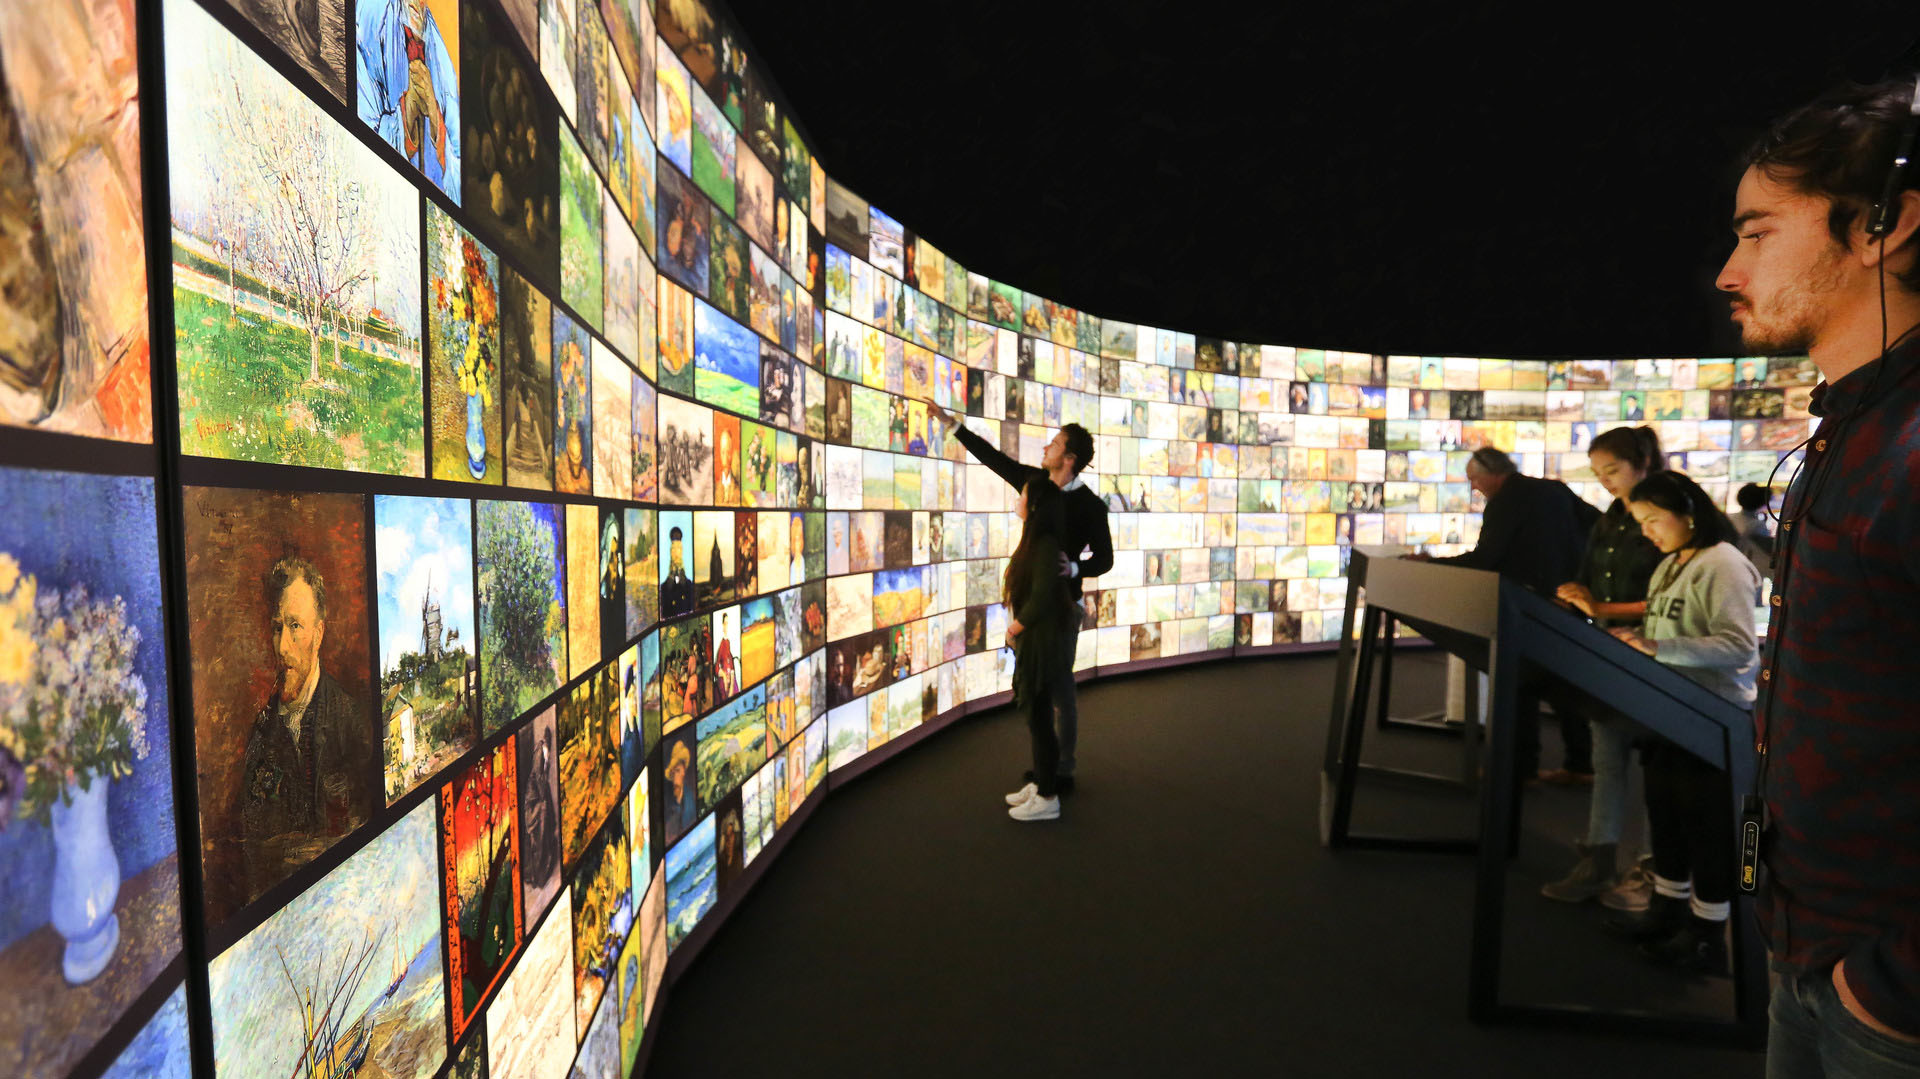 La sala “success” con más de 800 obras de arte digitalizadas